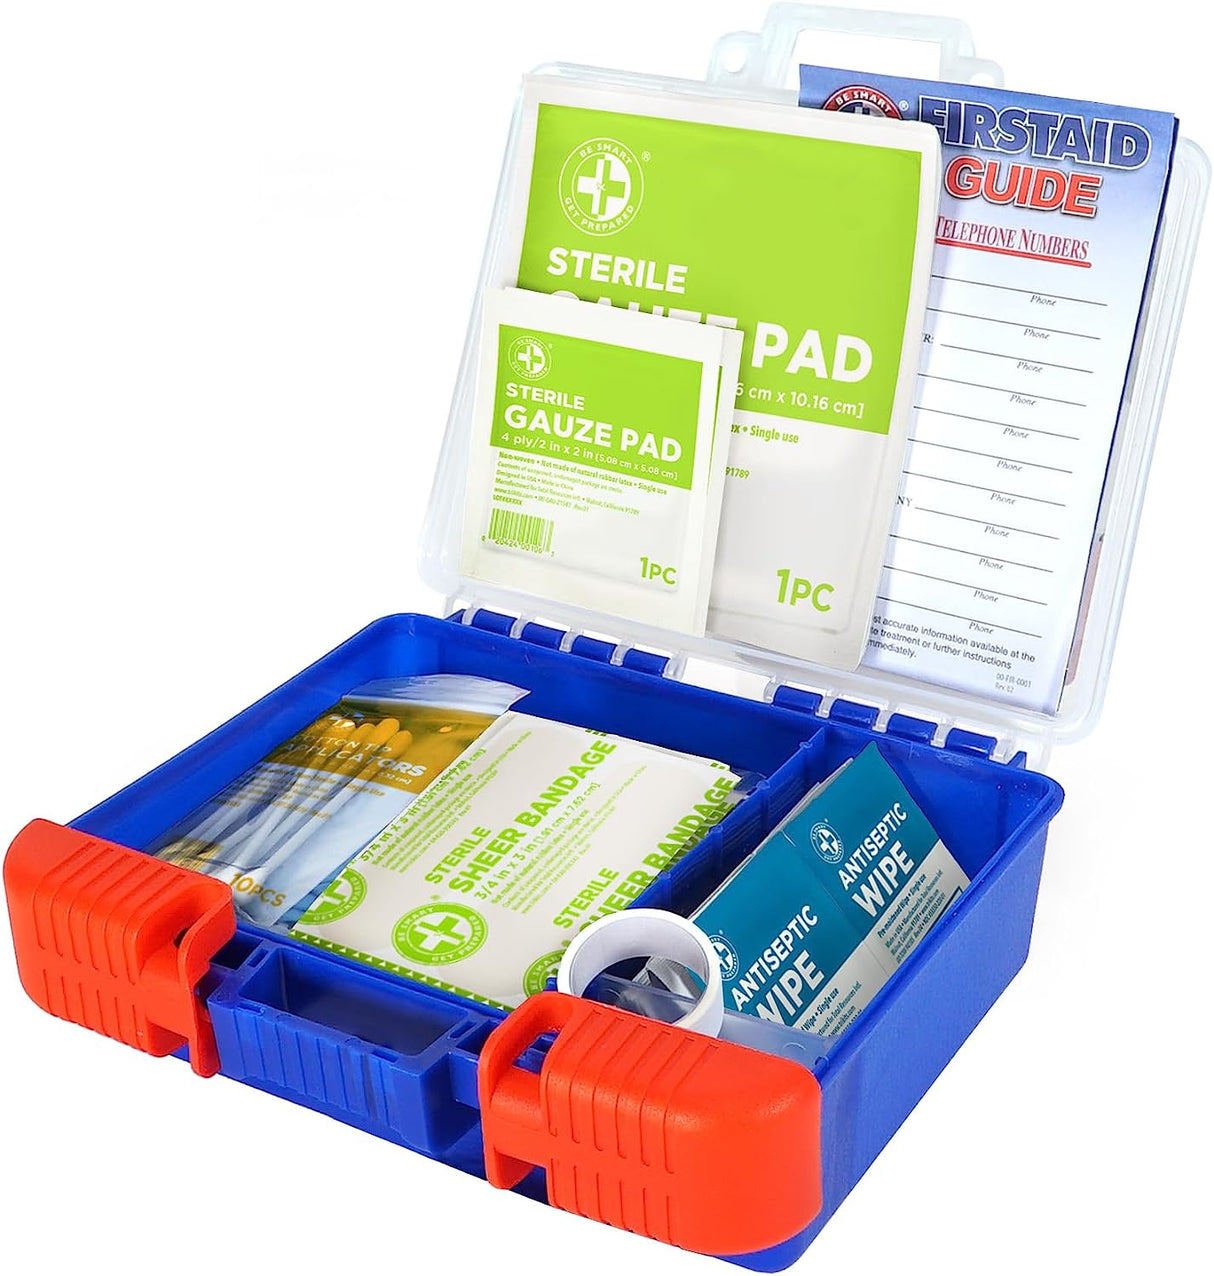 Kit de primeros auxilios Be Smart Get Prepared (110 piezas)